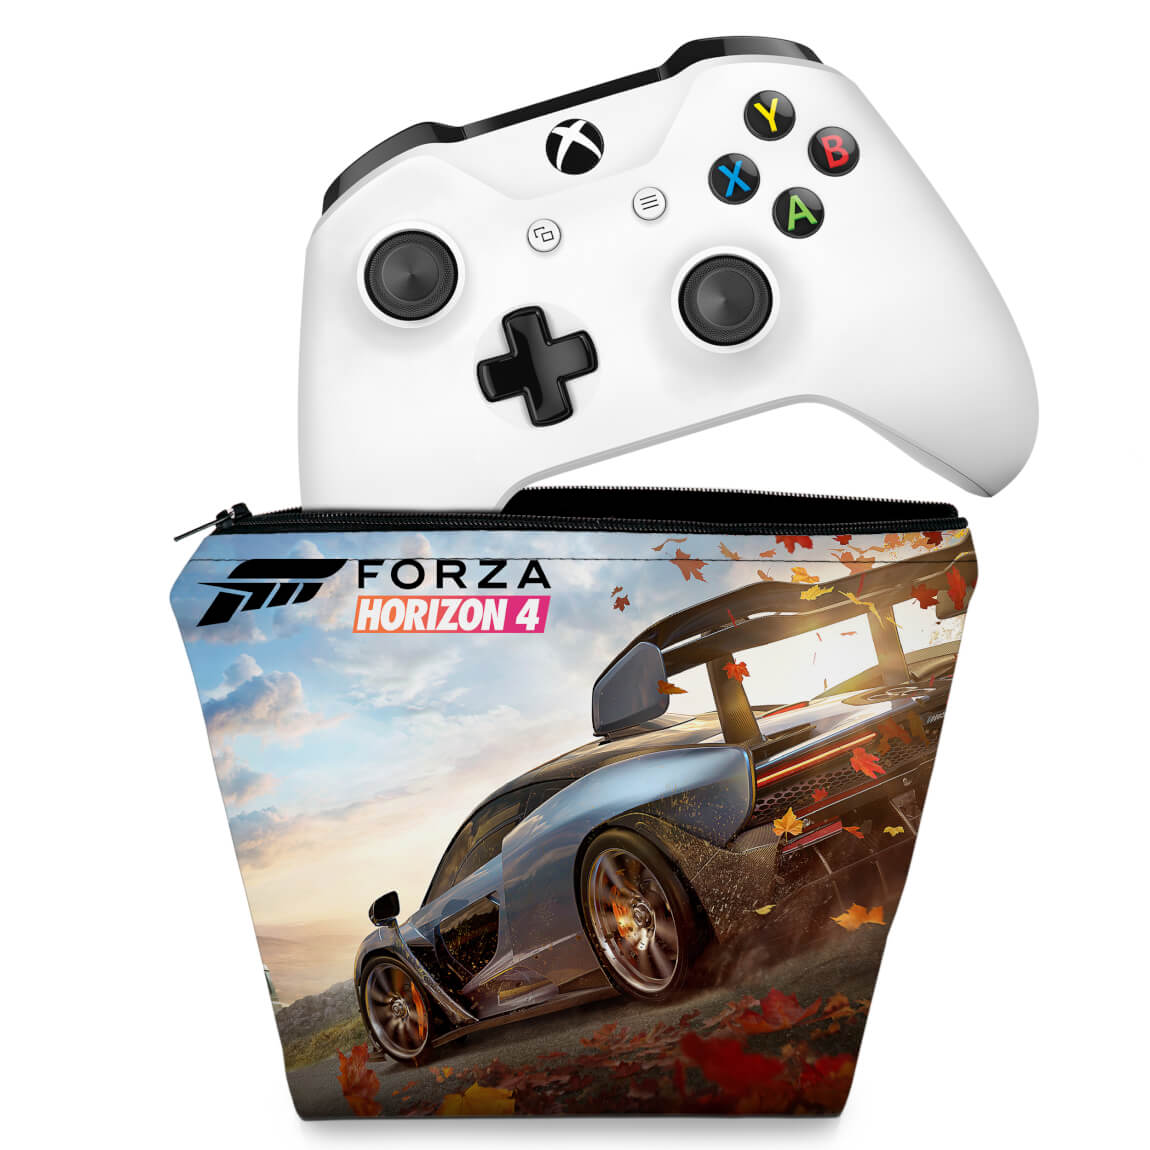 Forza Horizon 4 - Xbox One, Xbox One